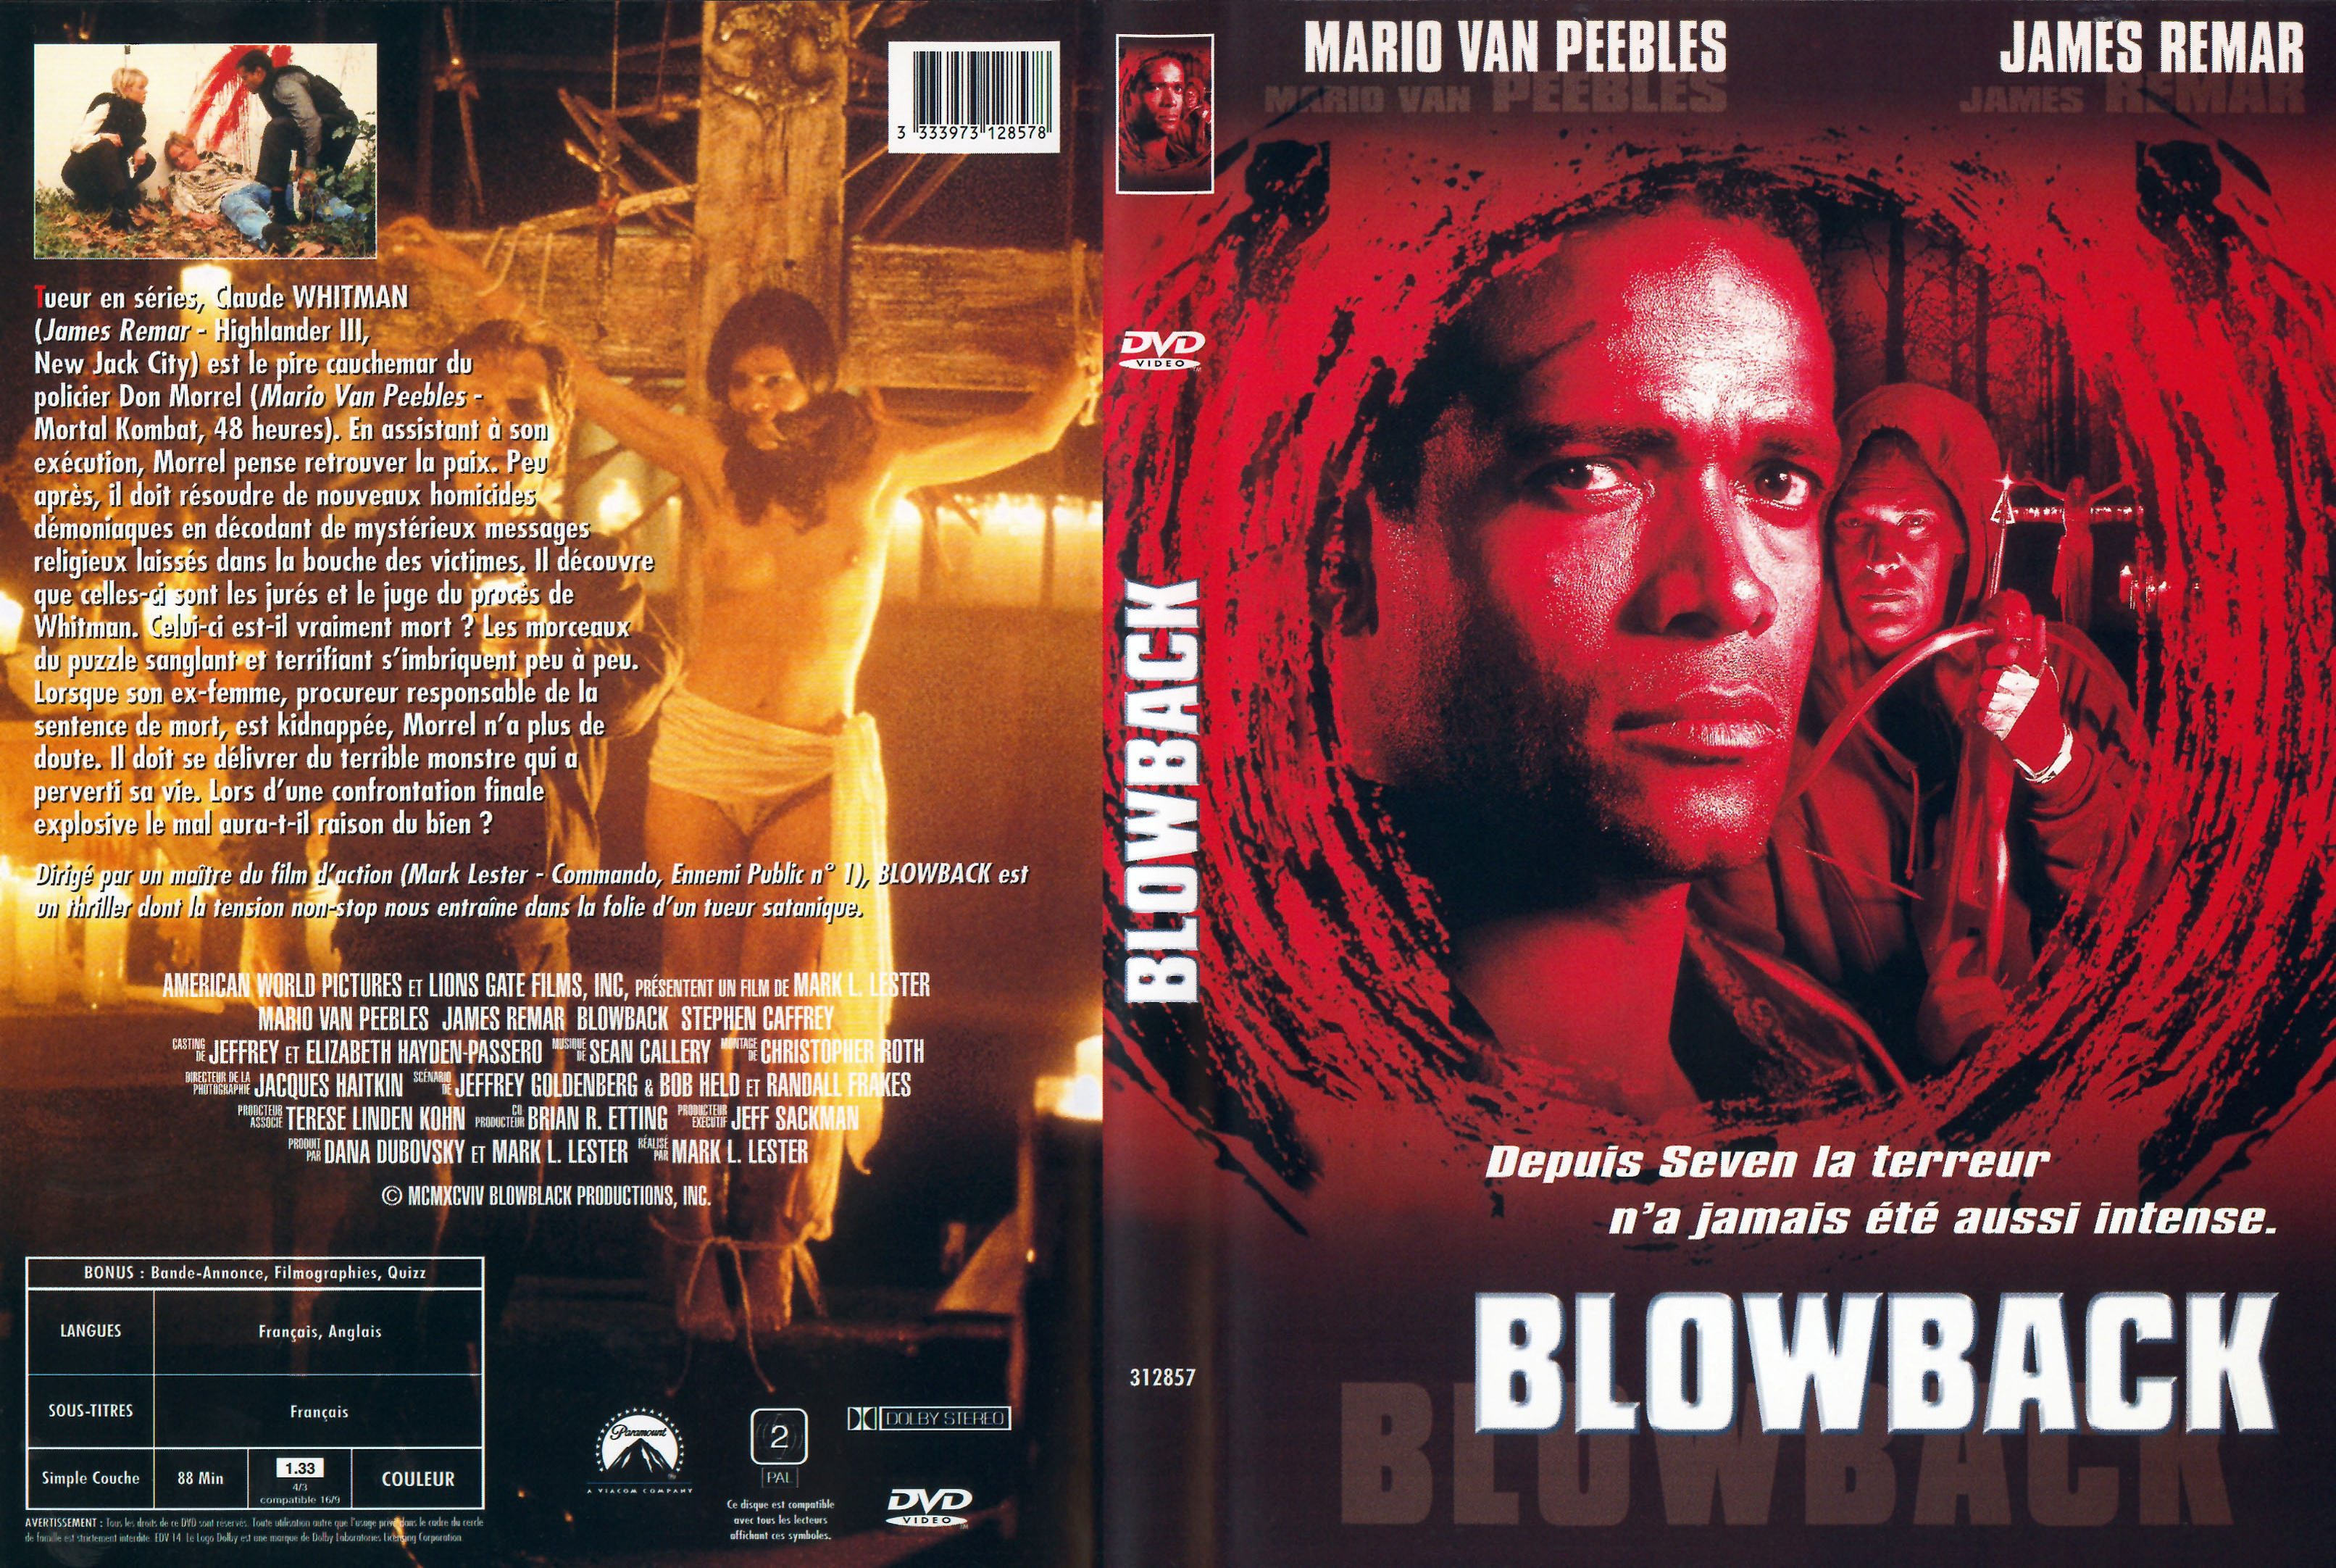 Jaquette DVD Blowback v2